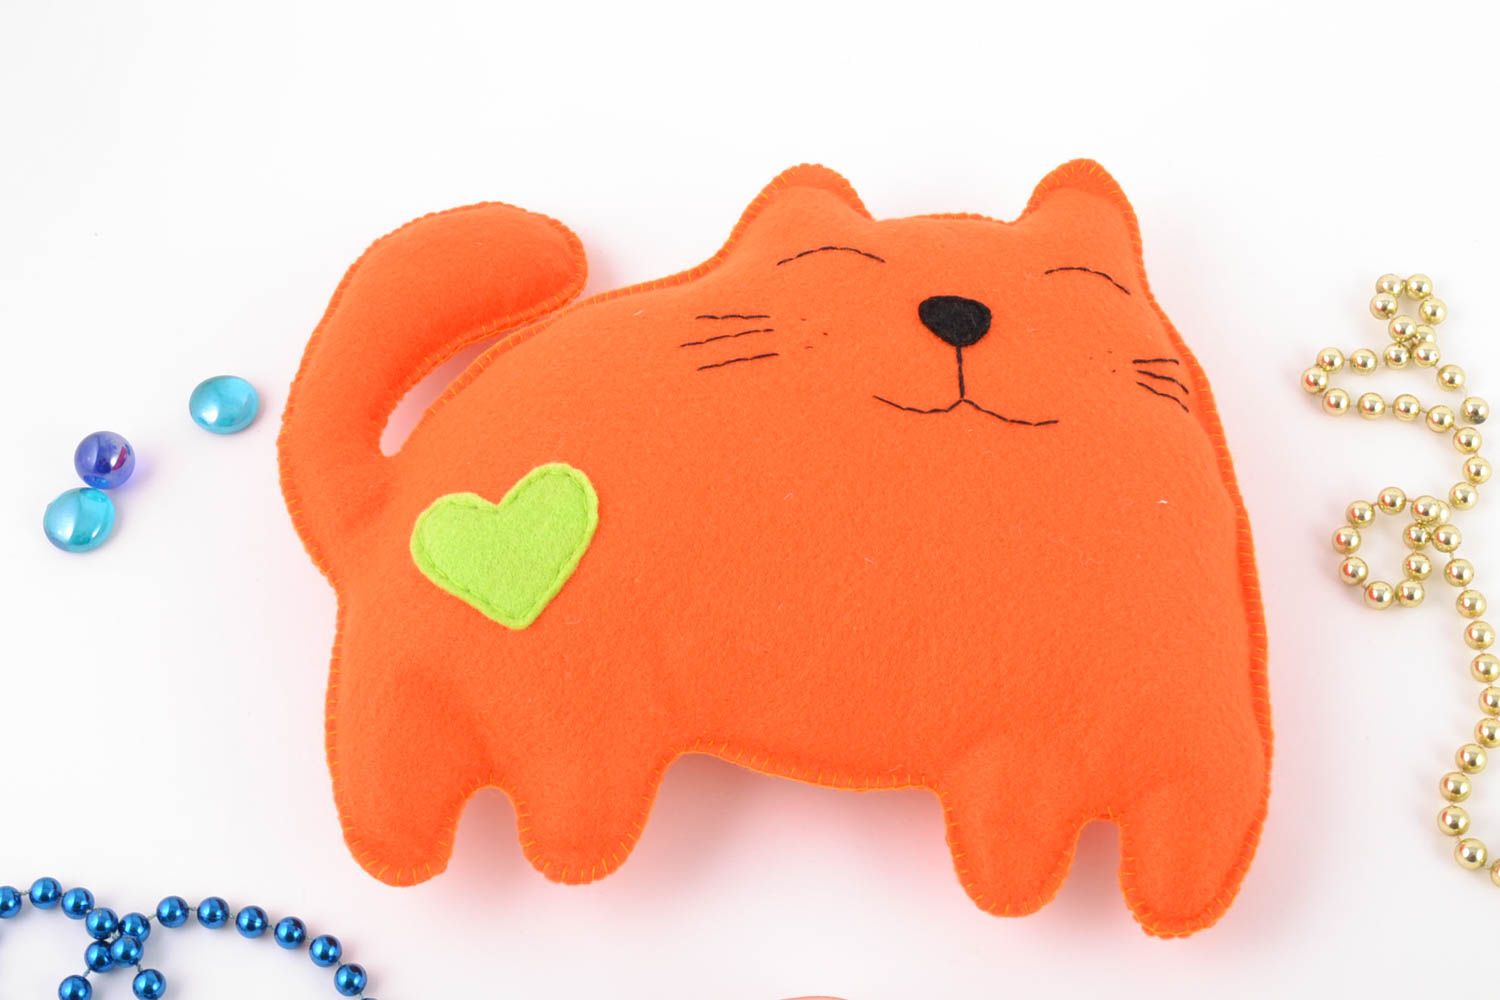 Оранжевая игрушка в виде кота ручной работы из фетра красивая оригинальная фото 1